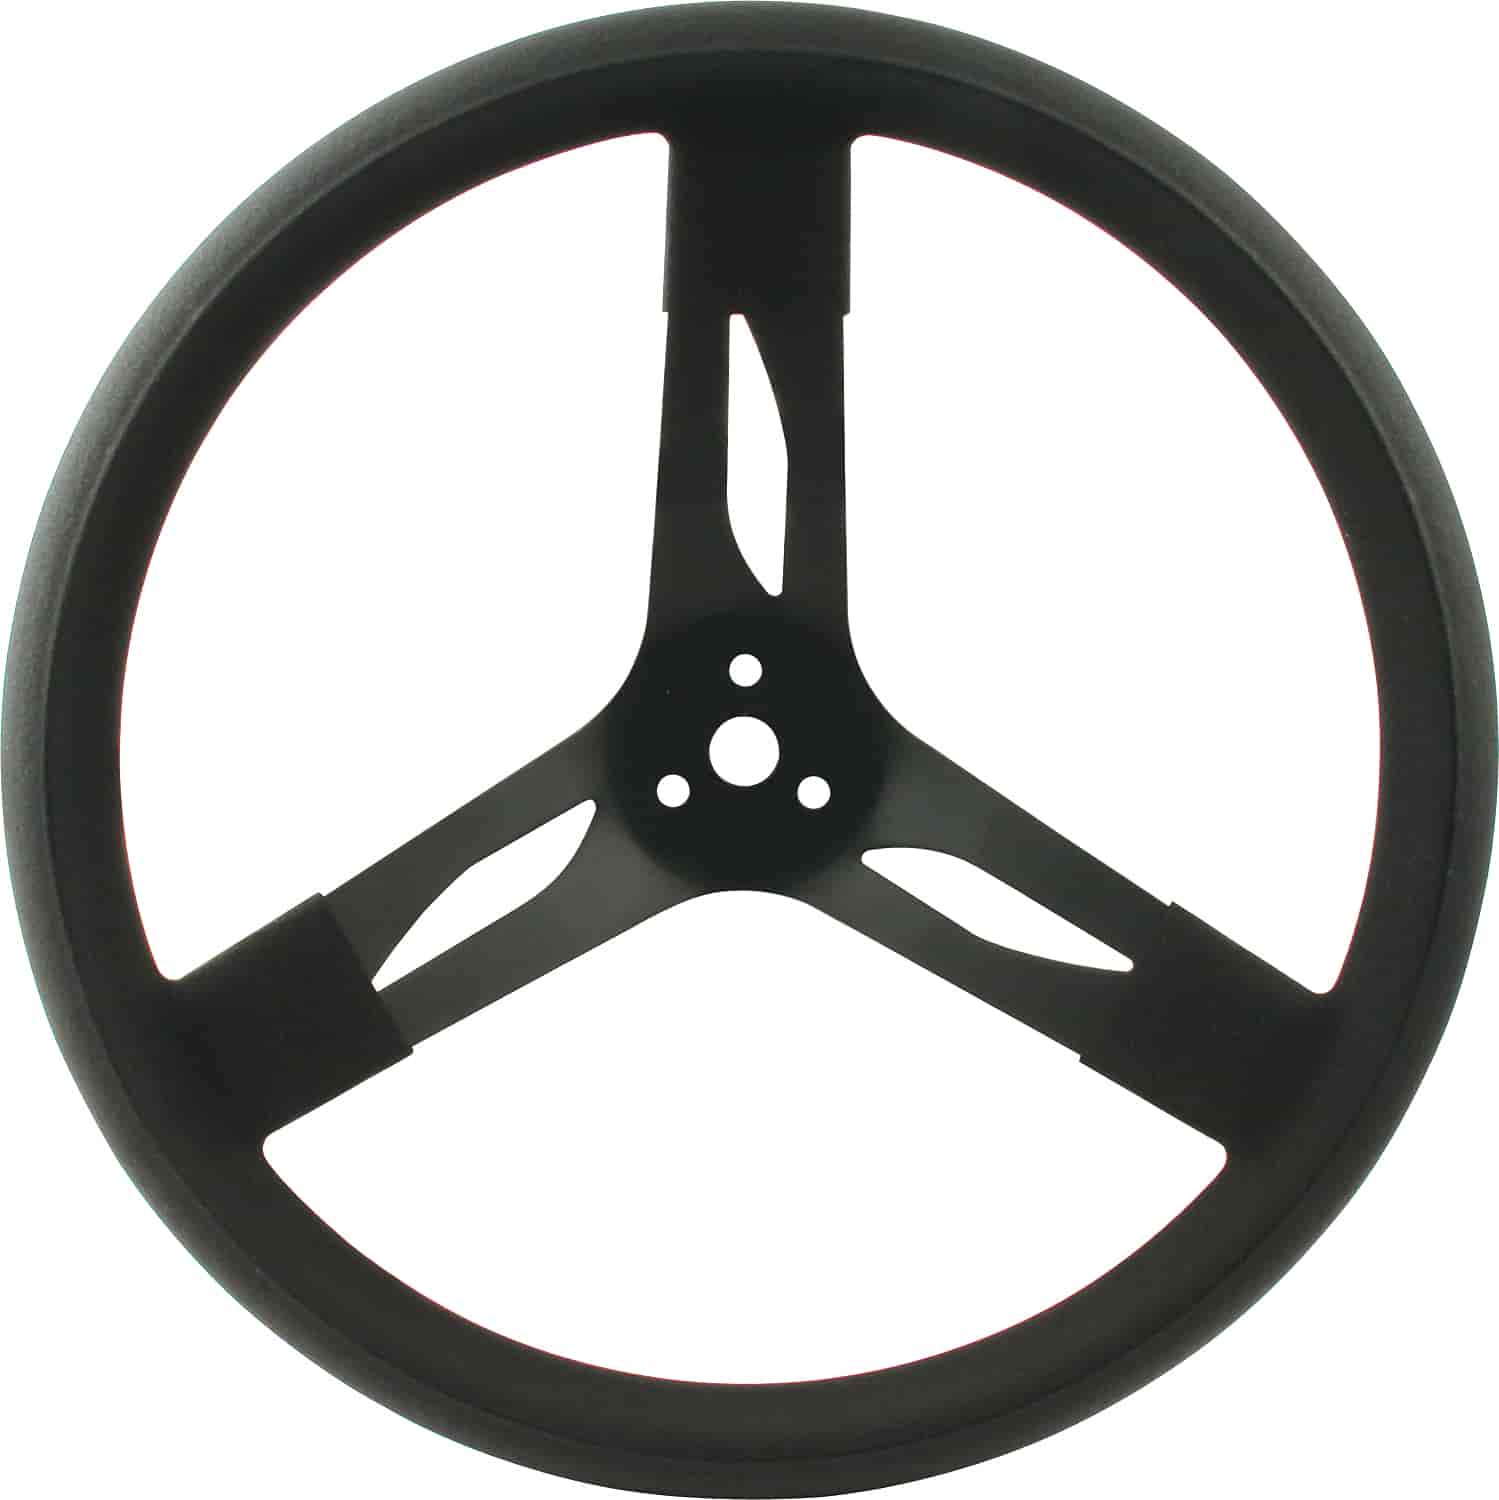 Steel Steering Wheel 17" Black Grip